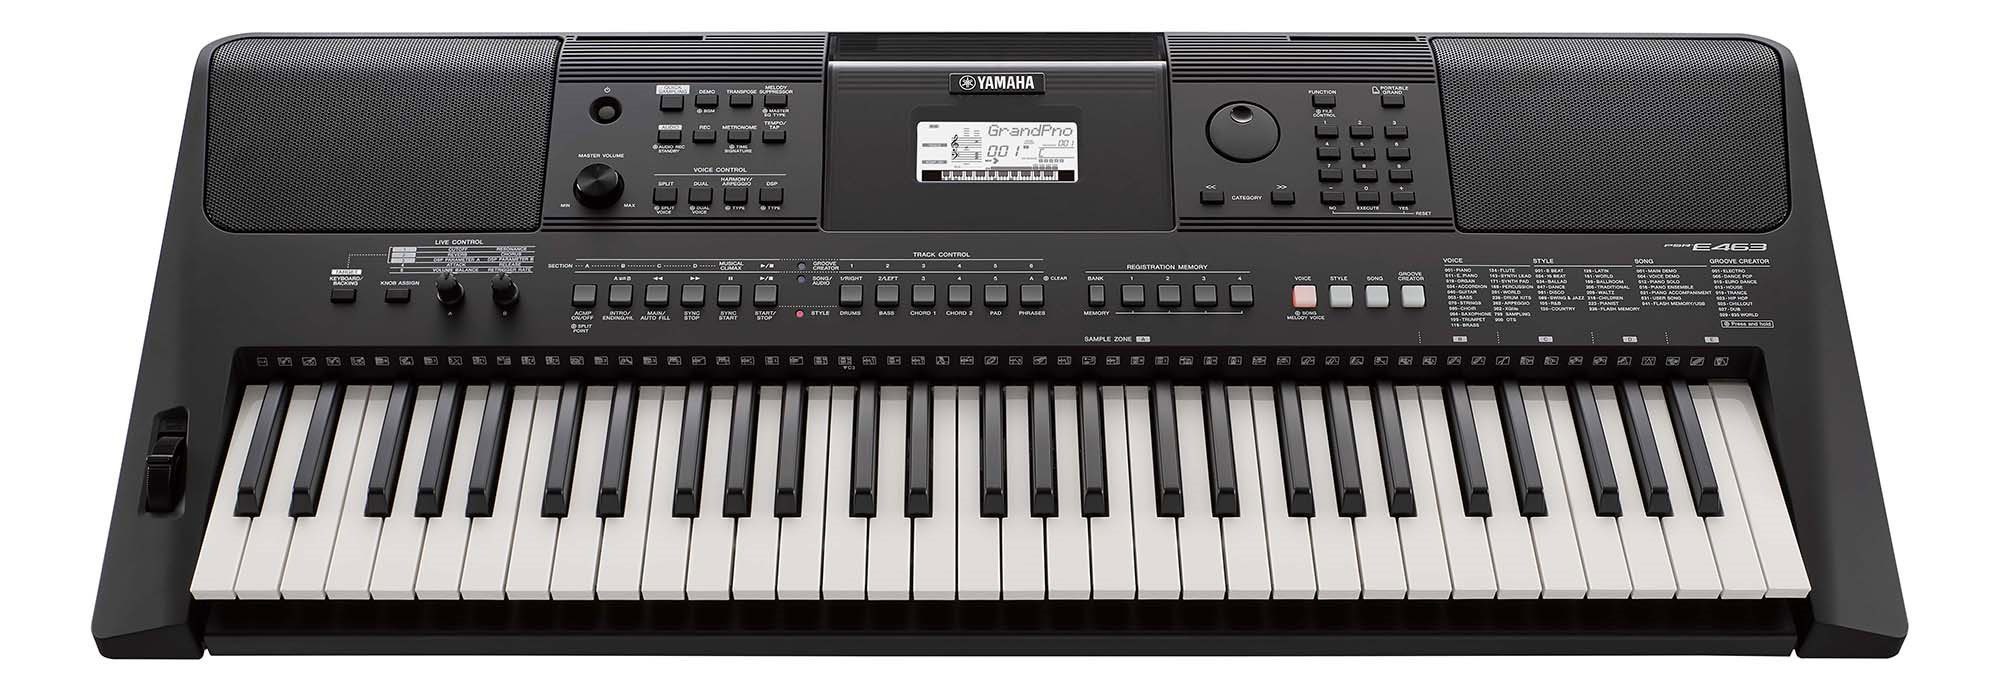 Yamaha portable keyboard PSR-E463